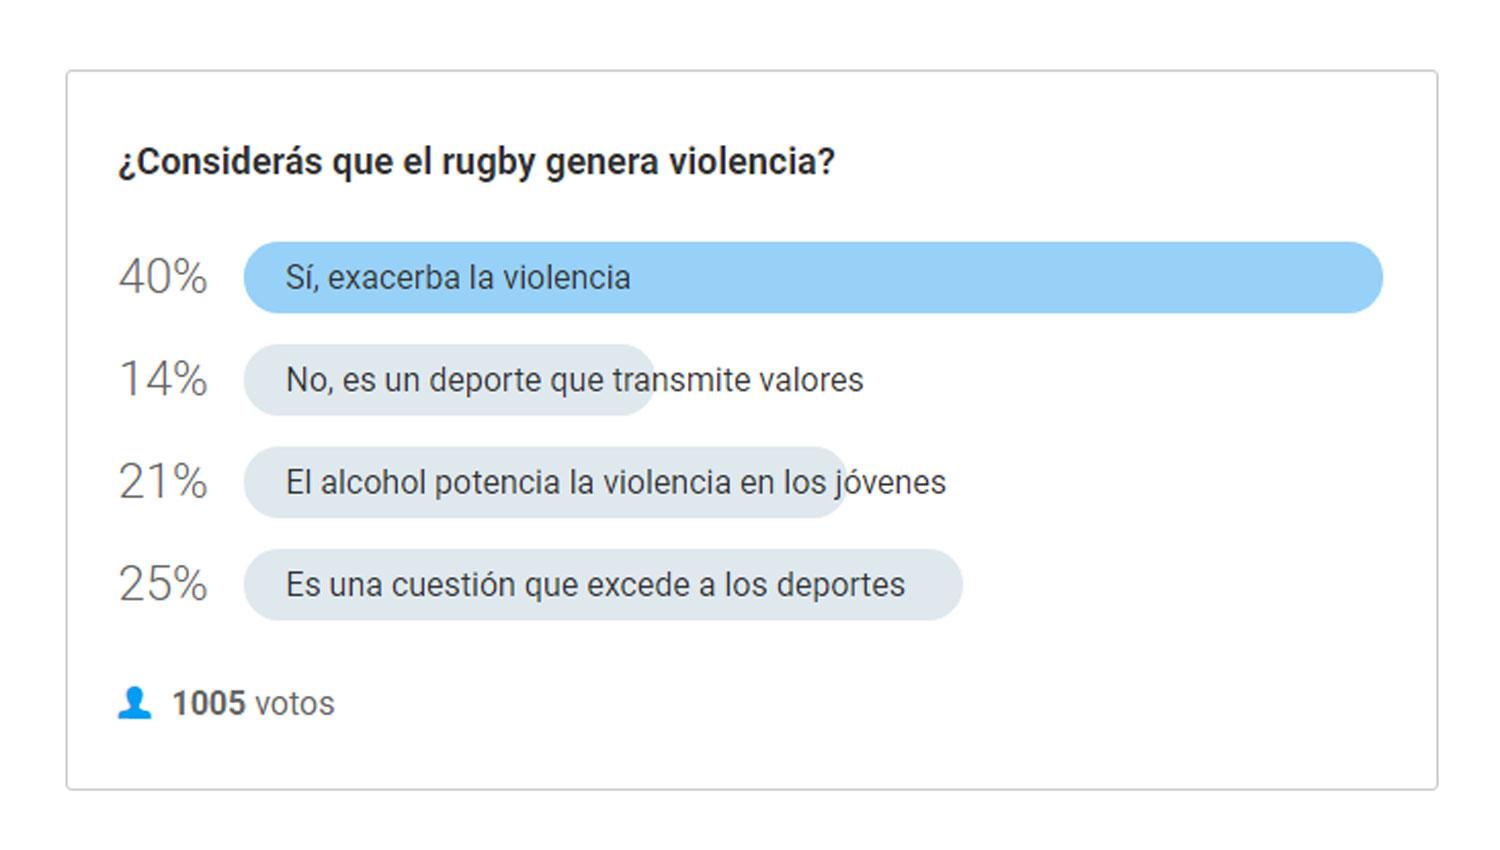 El 40% de los lectores de LA GACETA considera que el rugby exacerba la violencia